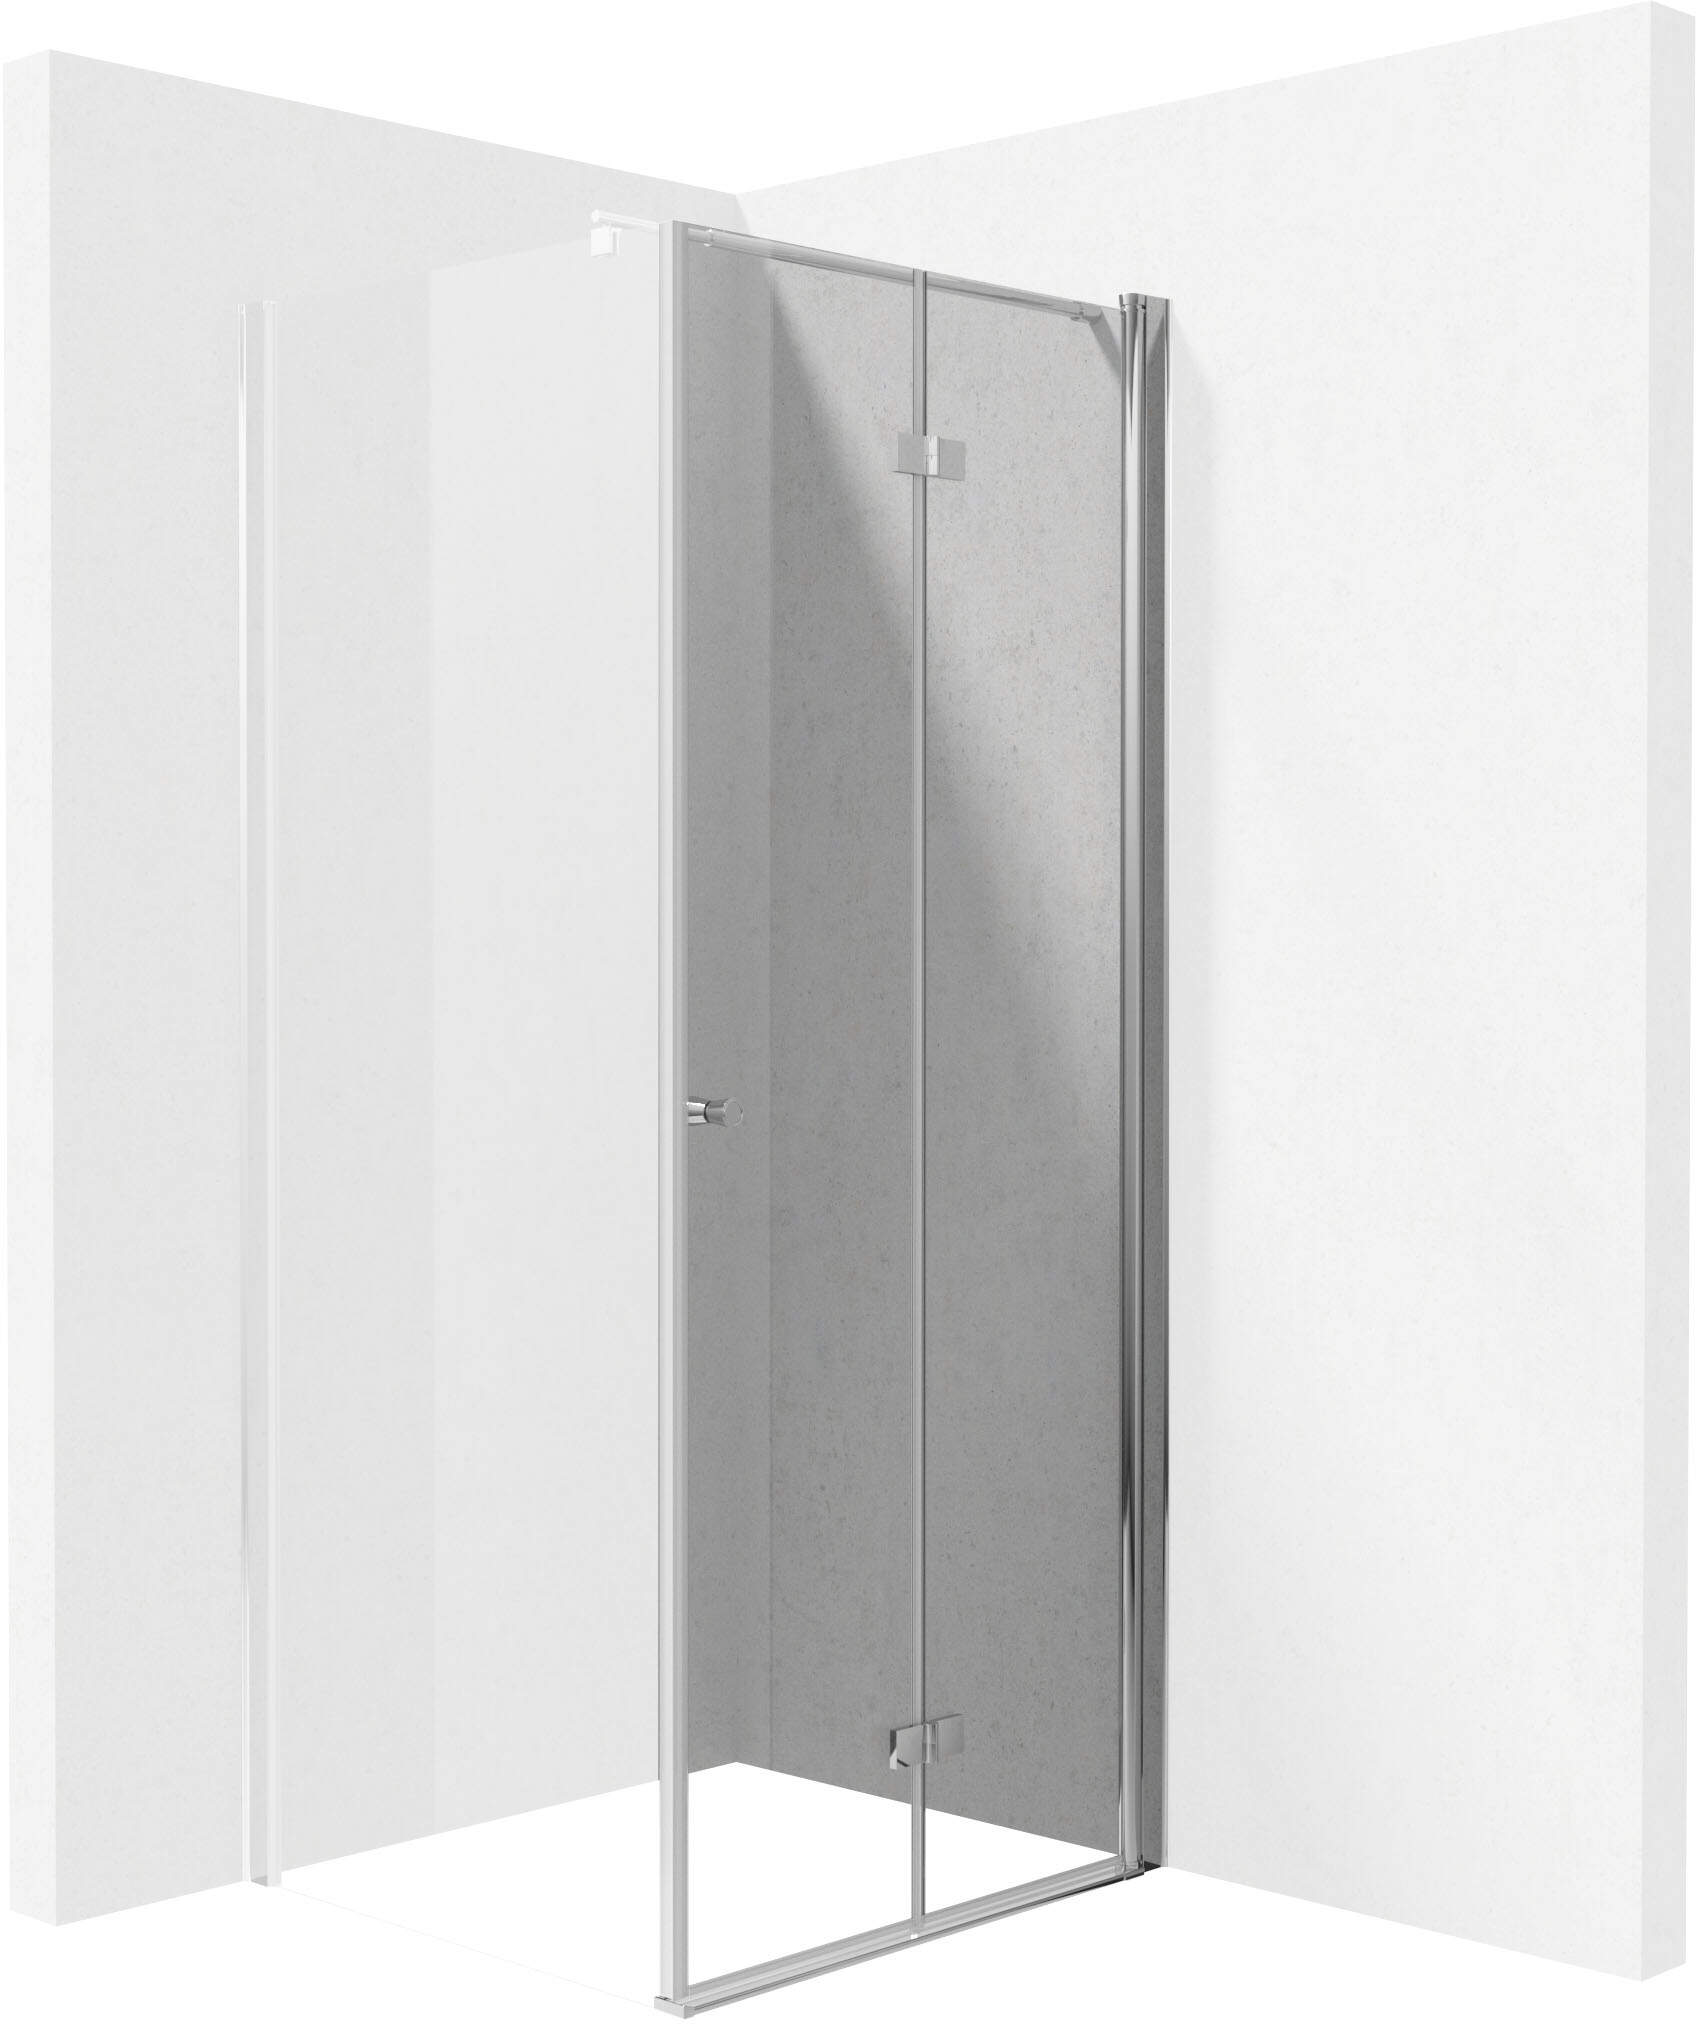 Sprchové dvere, systém Kerria Plus, 80 cm - sklopné